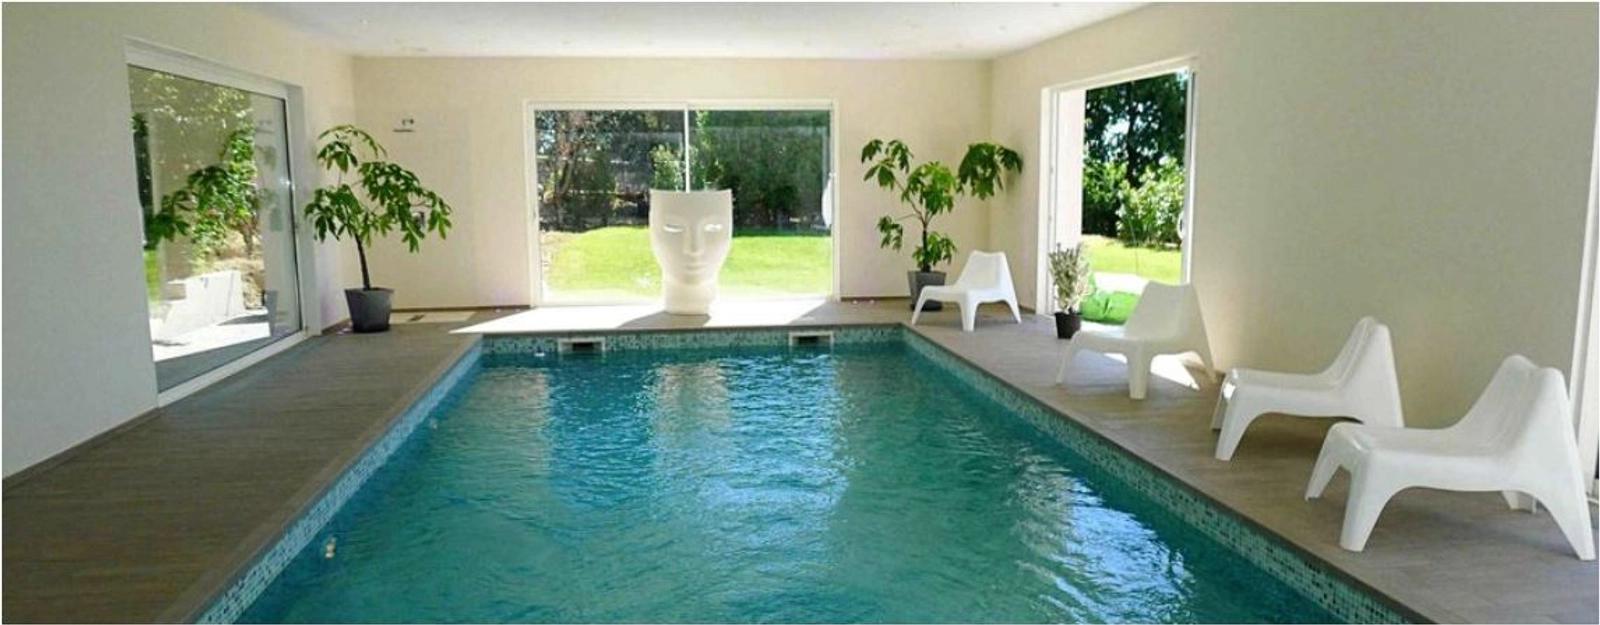 Espace Villa "espace et intimité" avec piscine intérieure - 1